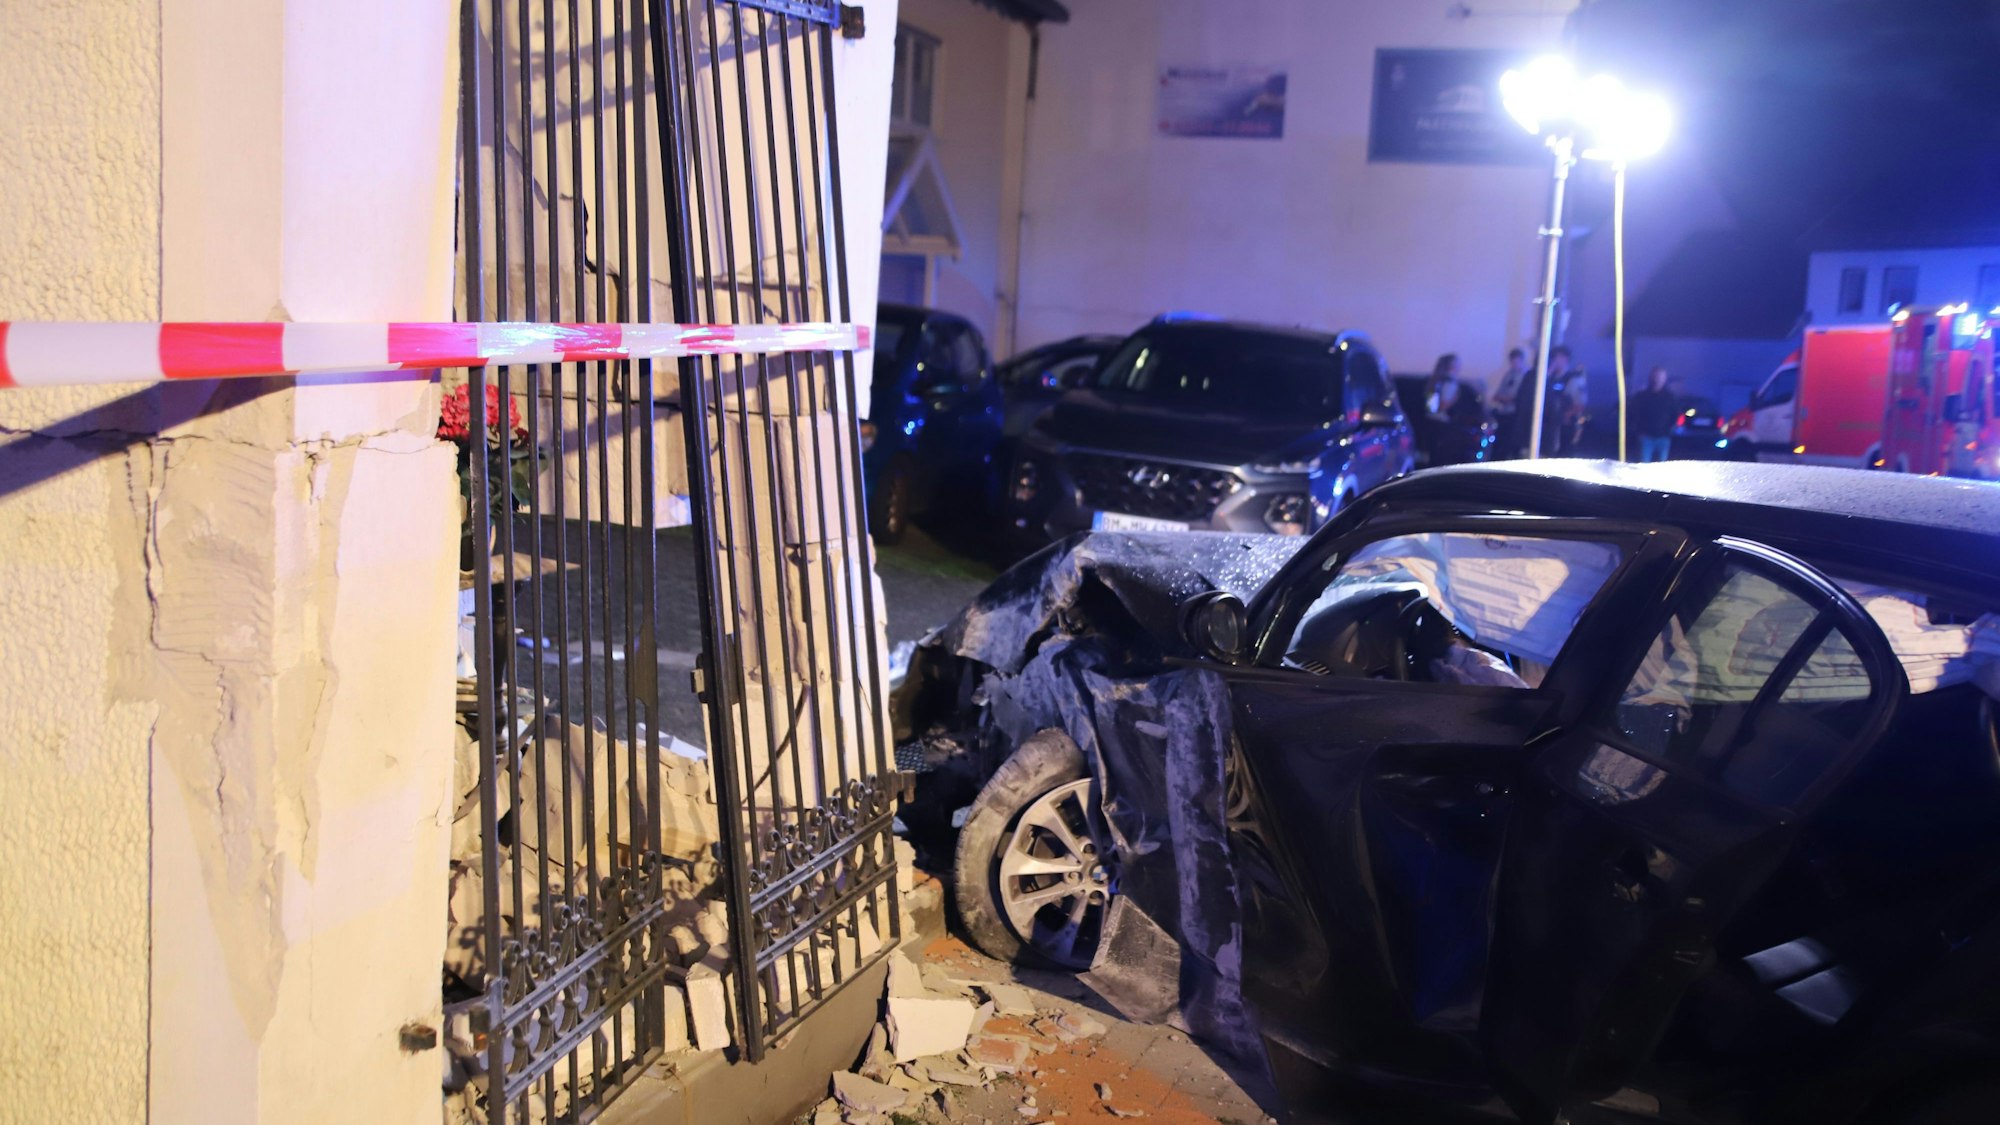 Bei einem Unfall in Sankt Augustin-Menden raste ein 37 Jahre alter Autofahrer in ein Heiligenhäuschen an der Siegstraße. Zwei Menschen wurden verletzt. Das Bauwerk wurde schwer beschädigt, eine Kerze brannte aber noch.